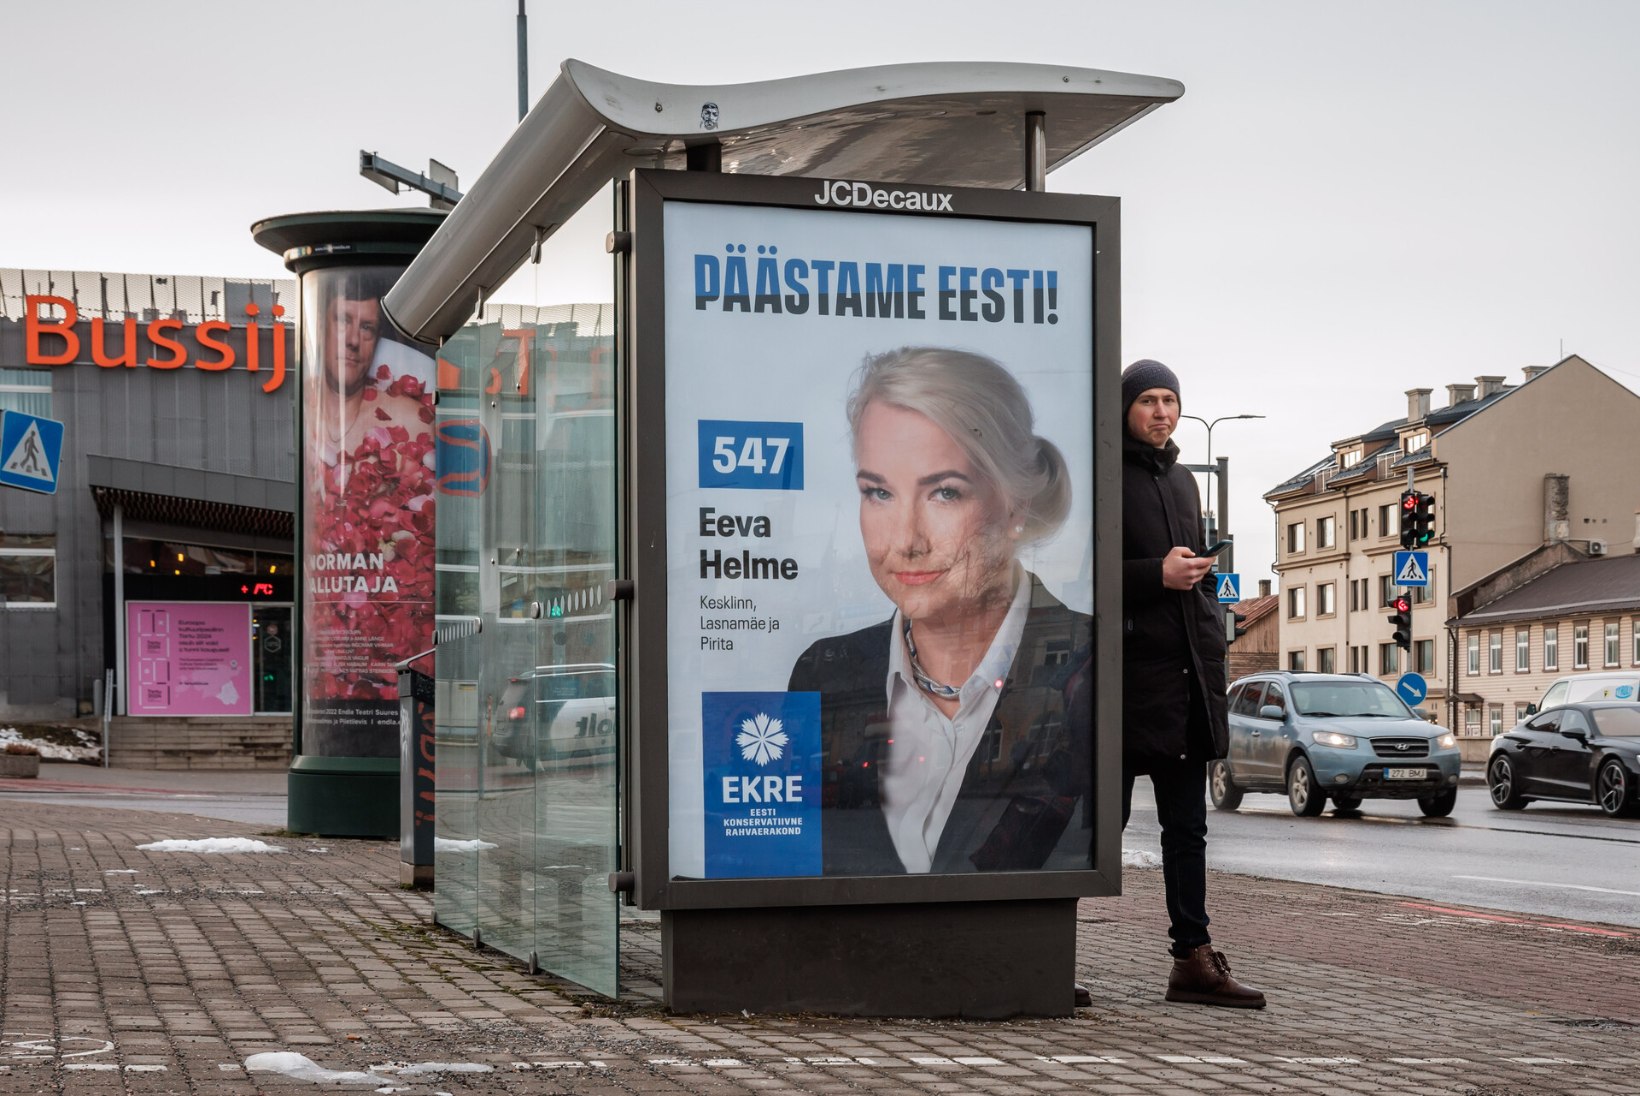 ÕL TV | Eeva Helme: kui Eestis oleks pooltelgi inimestel nii tugev perekond nagu meil, siis oleks palju rohkem ka õnnelikumaid inimesi